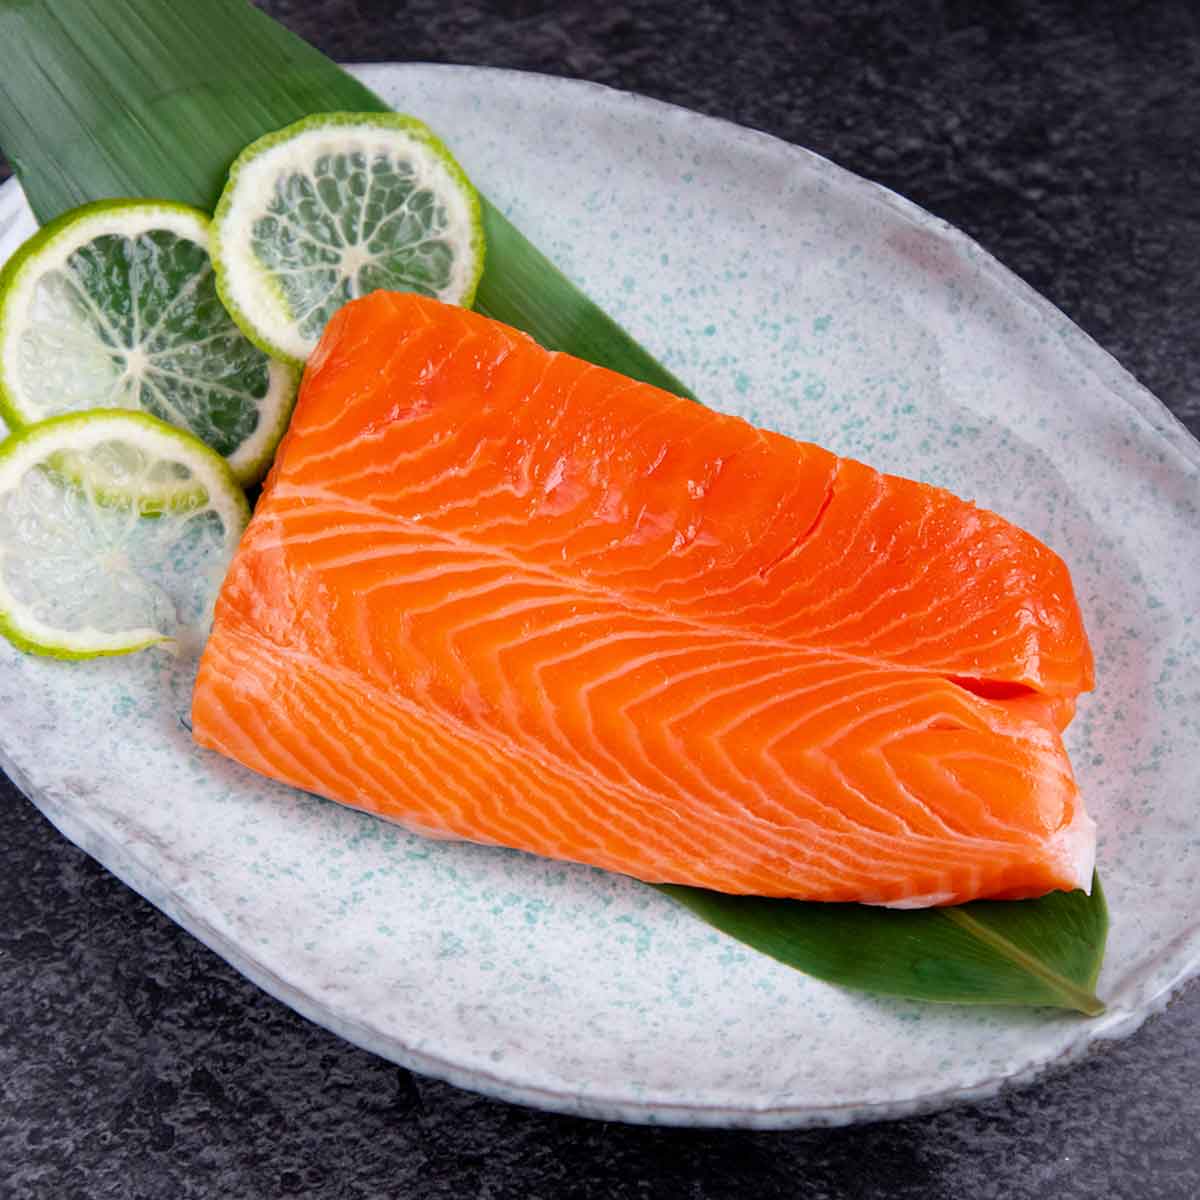 Yanagiya amplía su portafolio con una nueva línea de Pescado Premium, ofreciendo salmón Ōra King de Nueva Zelanda y atún aleta azul de Ensenada, México